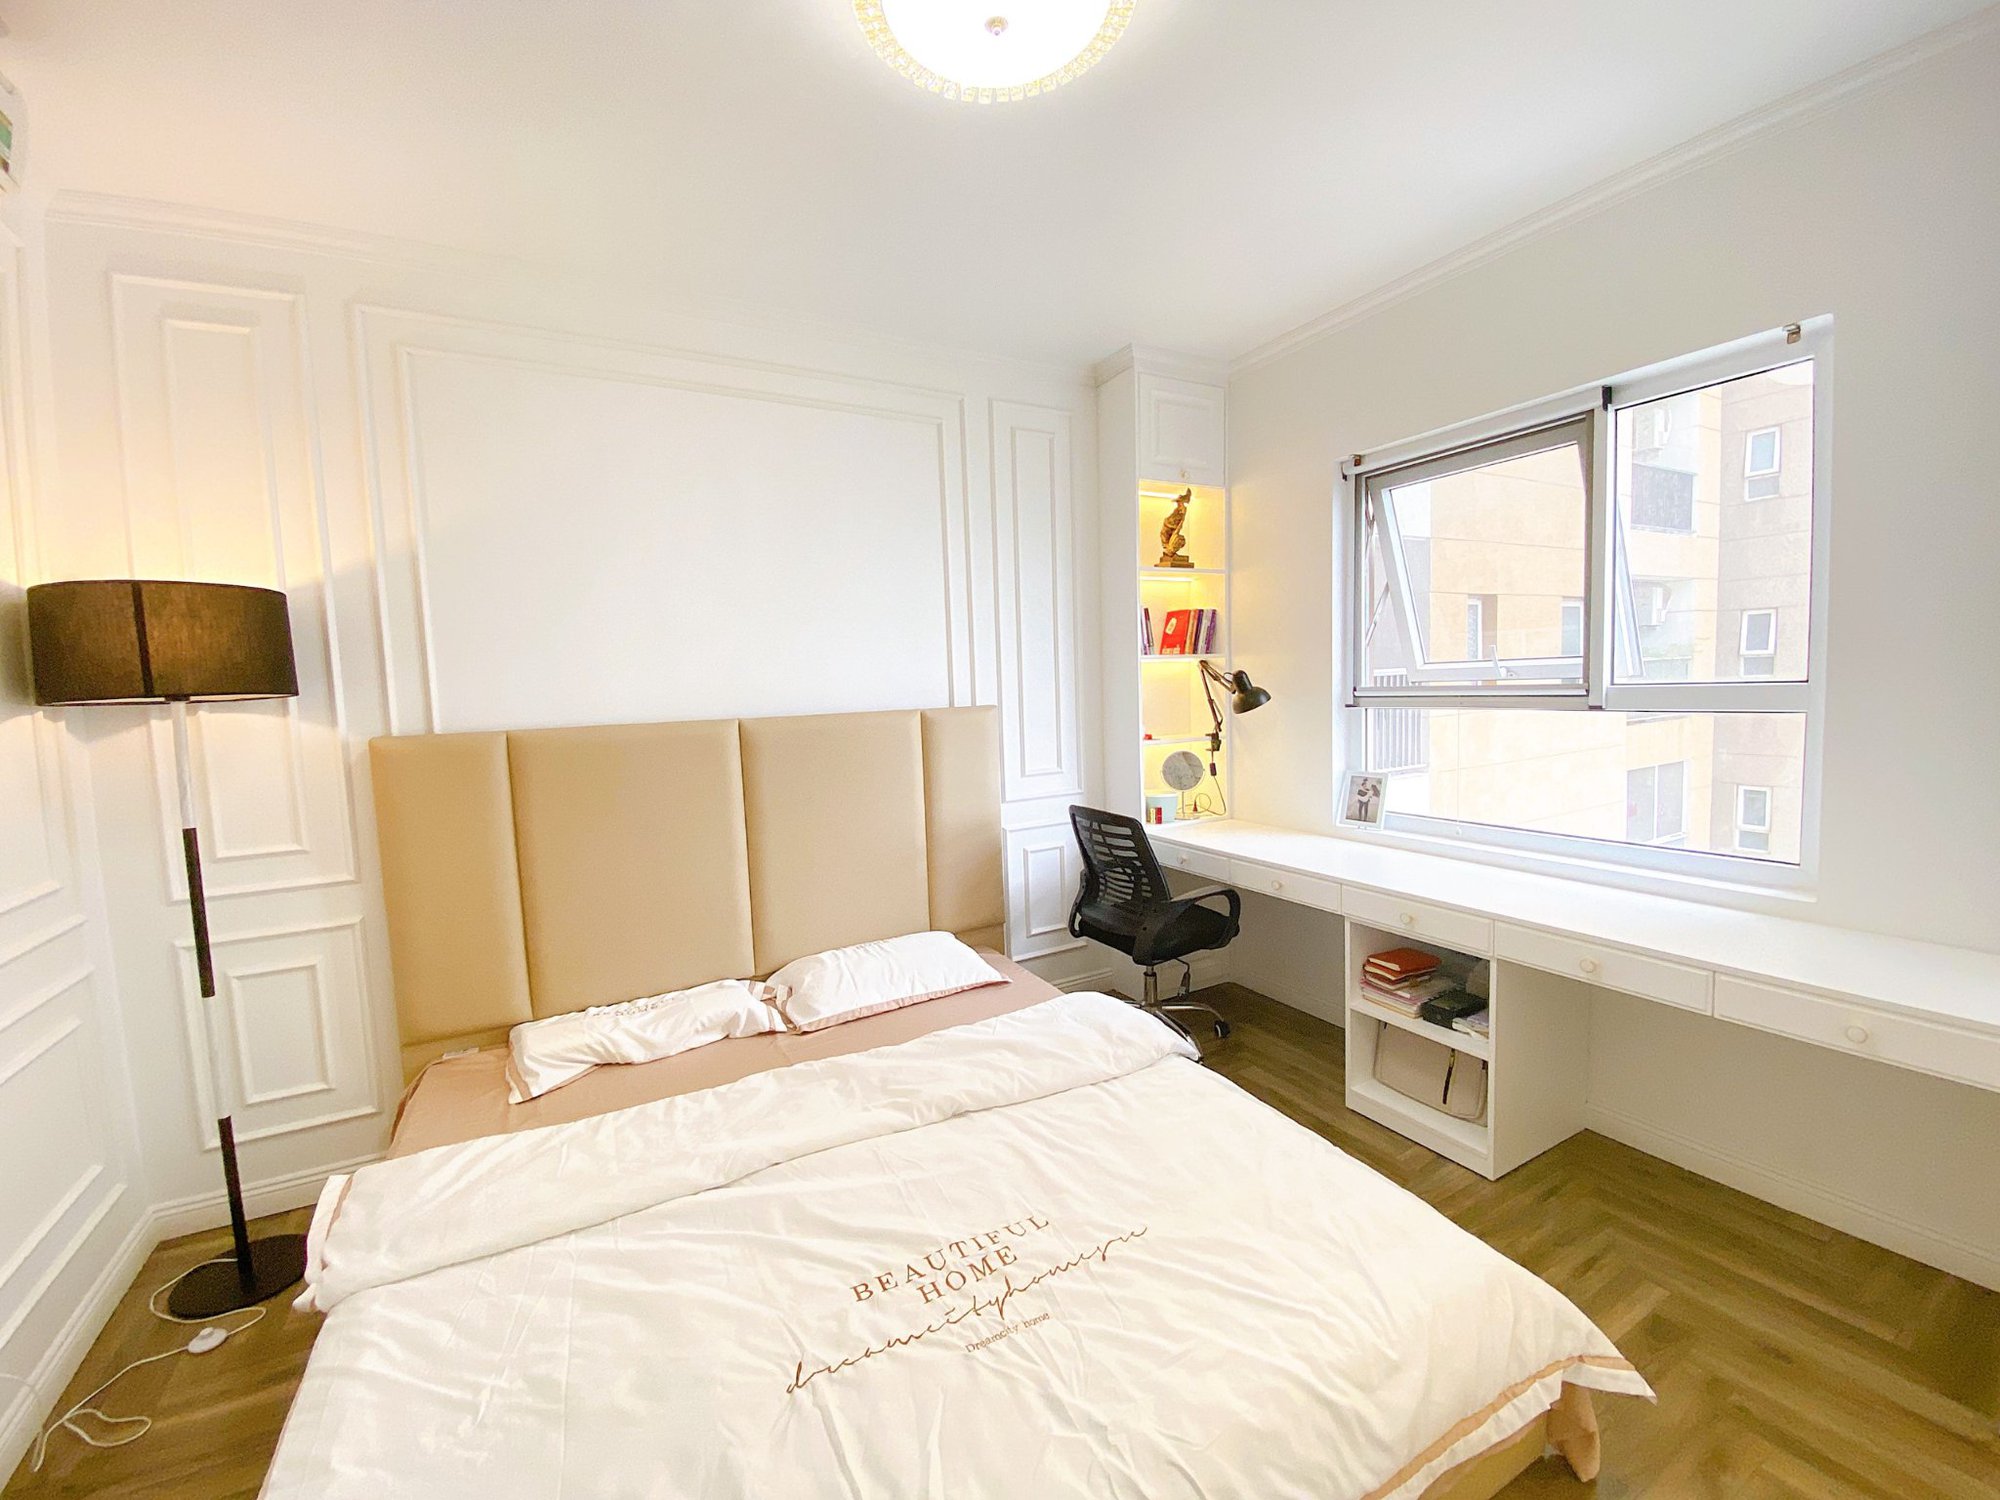 Cặp vợ chồng trẻ Hà Nội thay đổi căn hộ 85m² thành tổ ấm mới rộng thoáng theo gam màu trắng  - Ảnh 9.